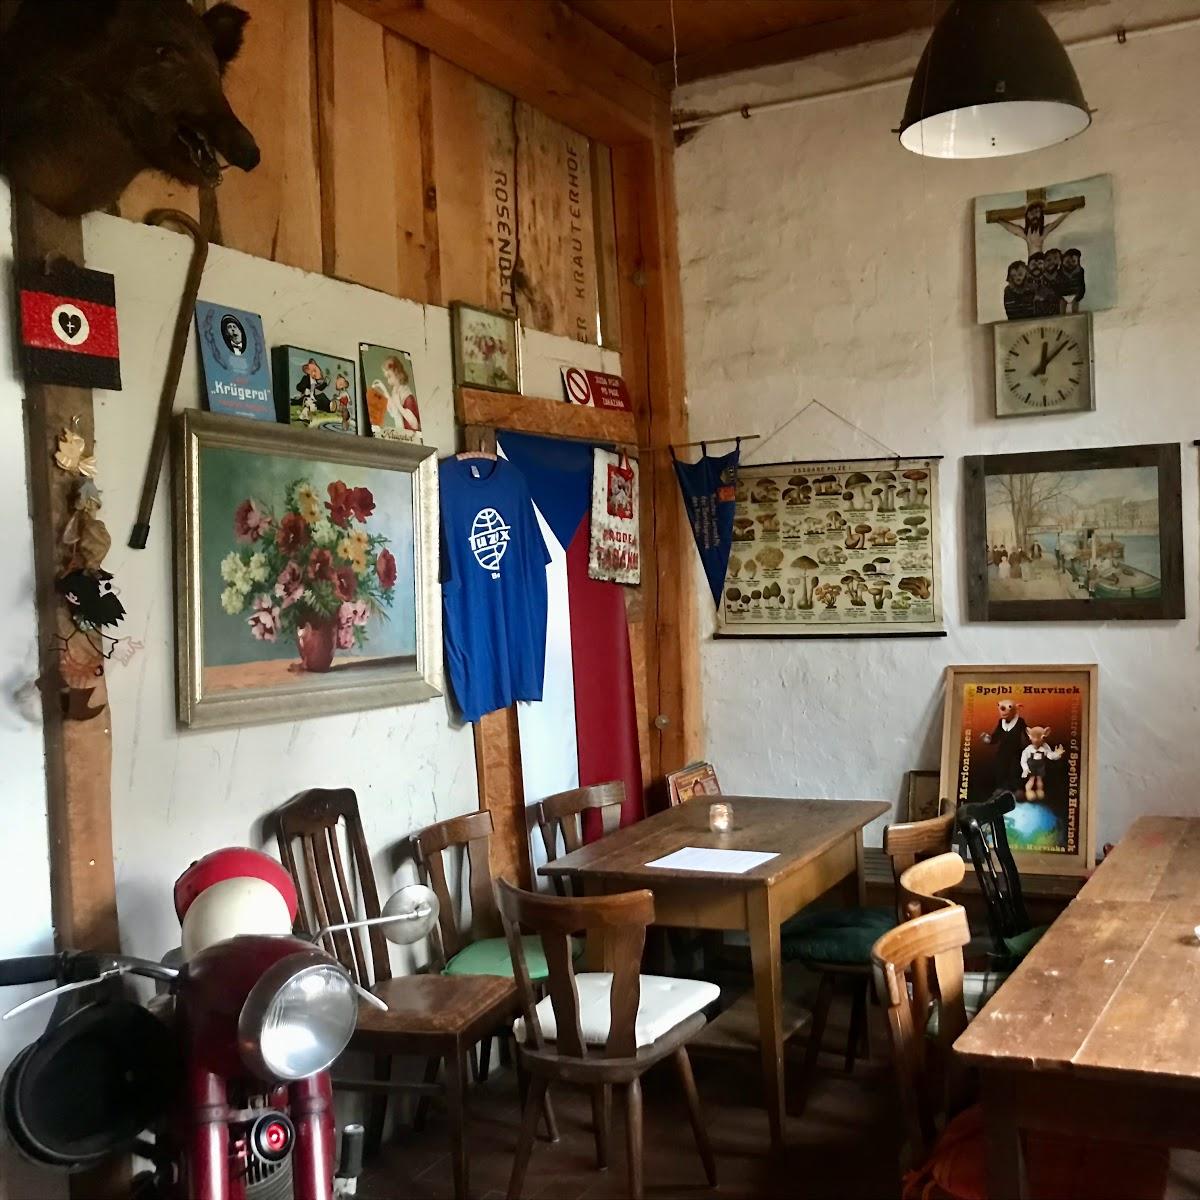 Restaurant "Zur Kleinen Moldau" in Schorfheide